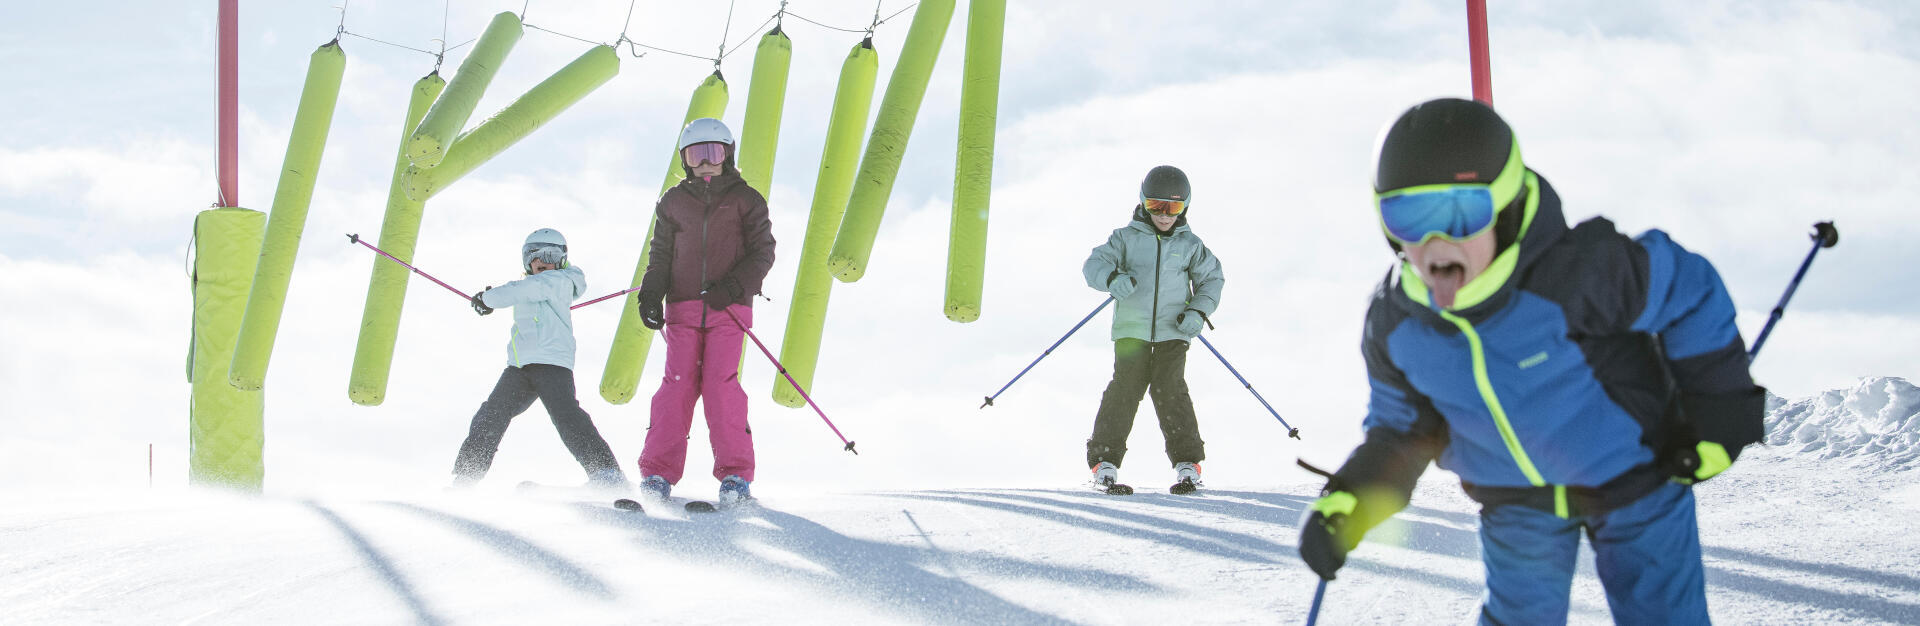 Comment faire aimer le ski aux enfants ?